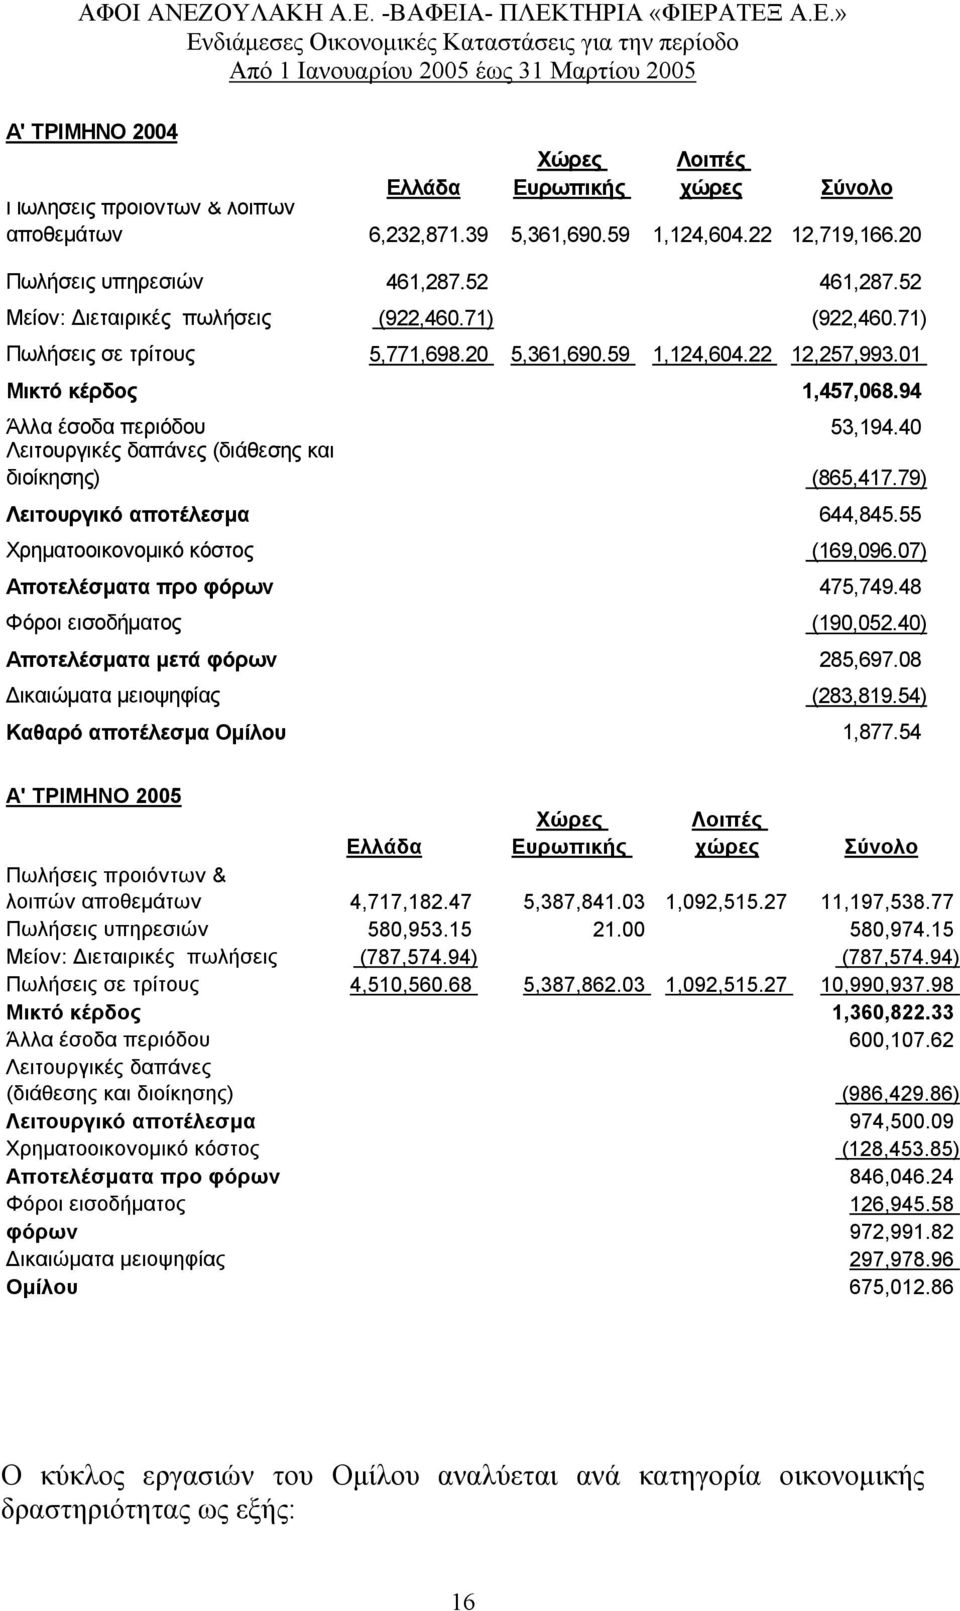 40 Λειτουργικές δαπάνες (διάθεσης και διοίκησης) (865,417.79) Λειτουργικό αποτέλεσµα 644,845.55 Χρηµατοοικονοµικό κόστος (169,096.07) Αποτελέσµατα προ φόρων 475,749.48 Φόροι εισοδήµατος (190,052.